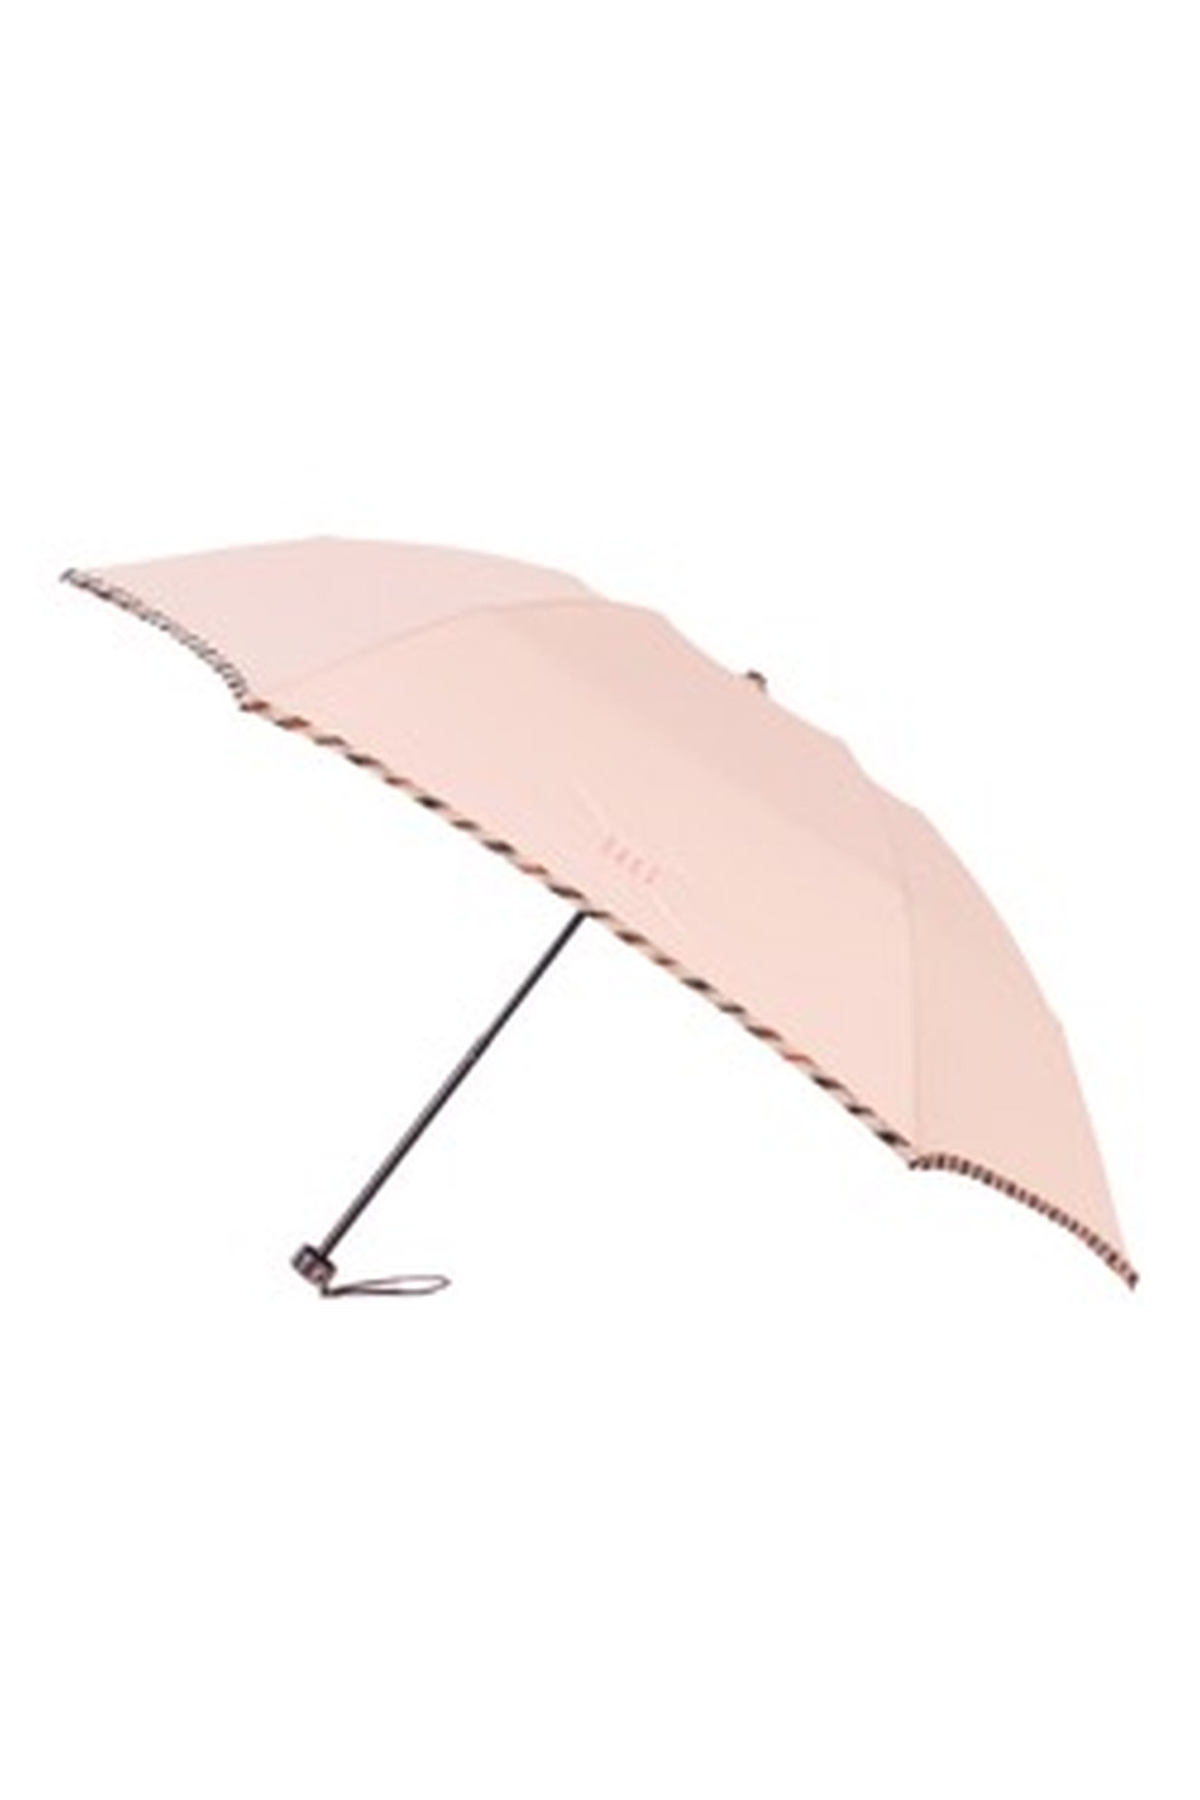 【雨傘】折りたたみ傘無地パイピング 詳細画像 2